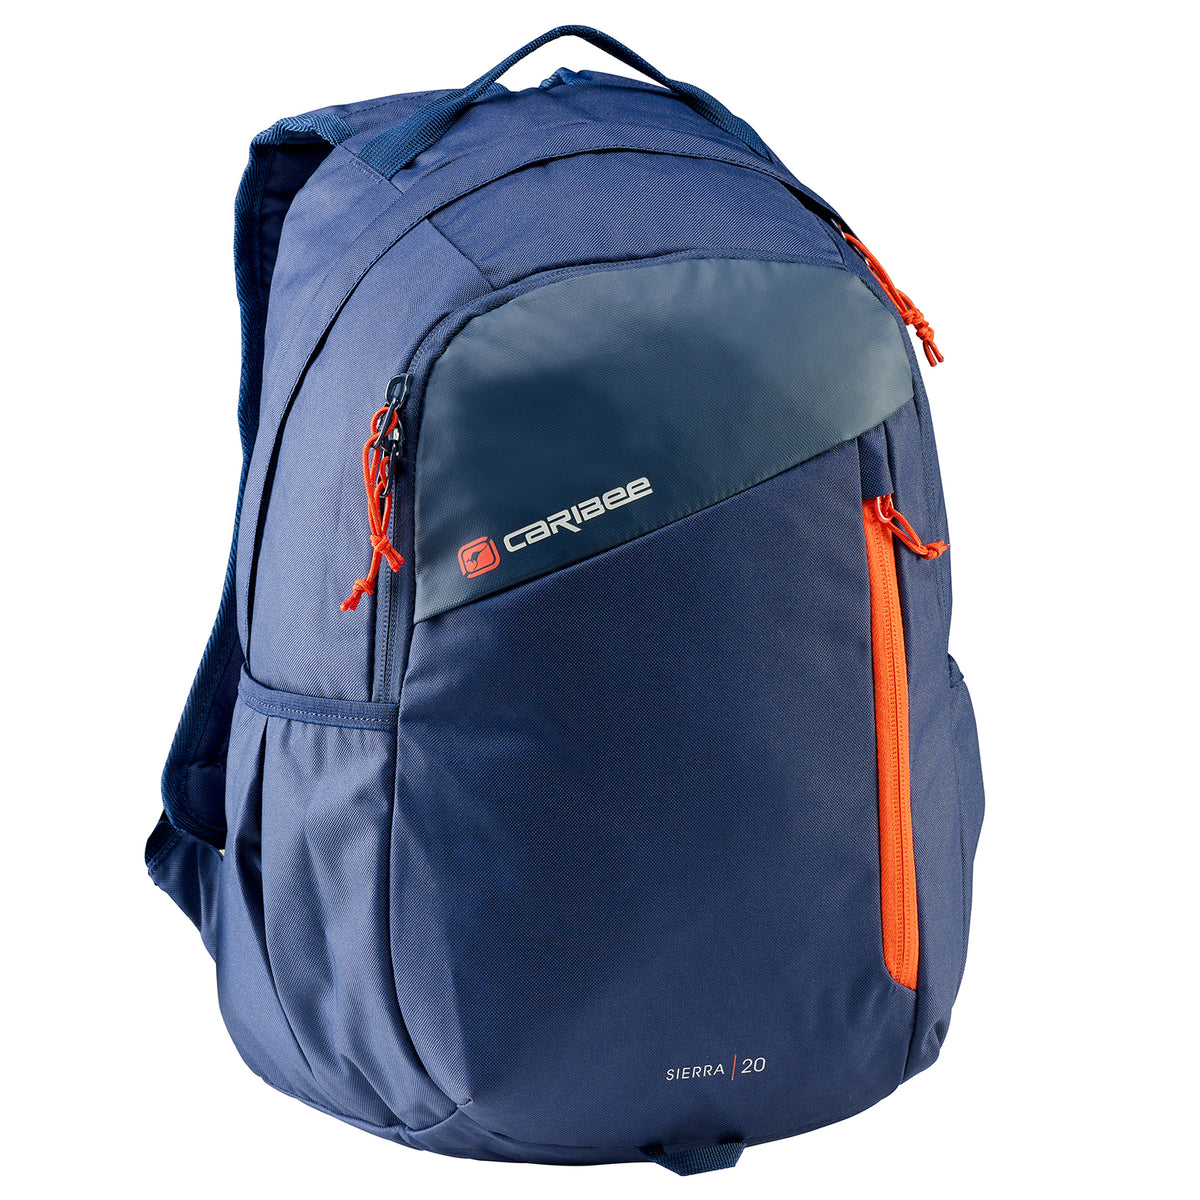 Caribee - Sierra 20lt Sports backpack - Navy/Red